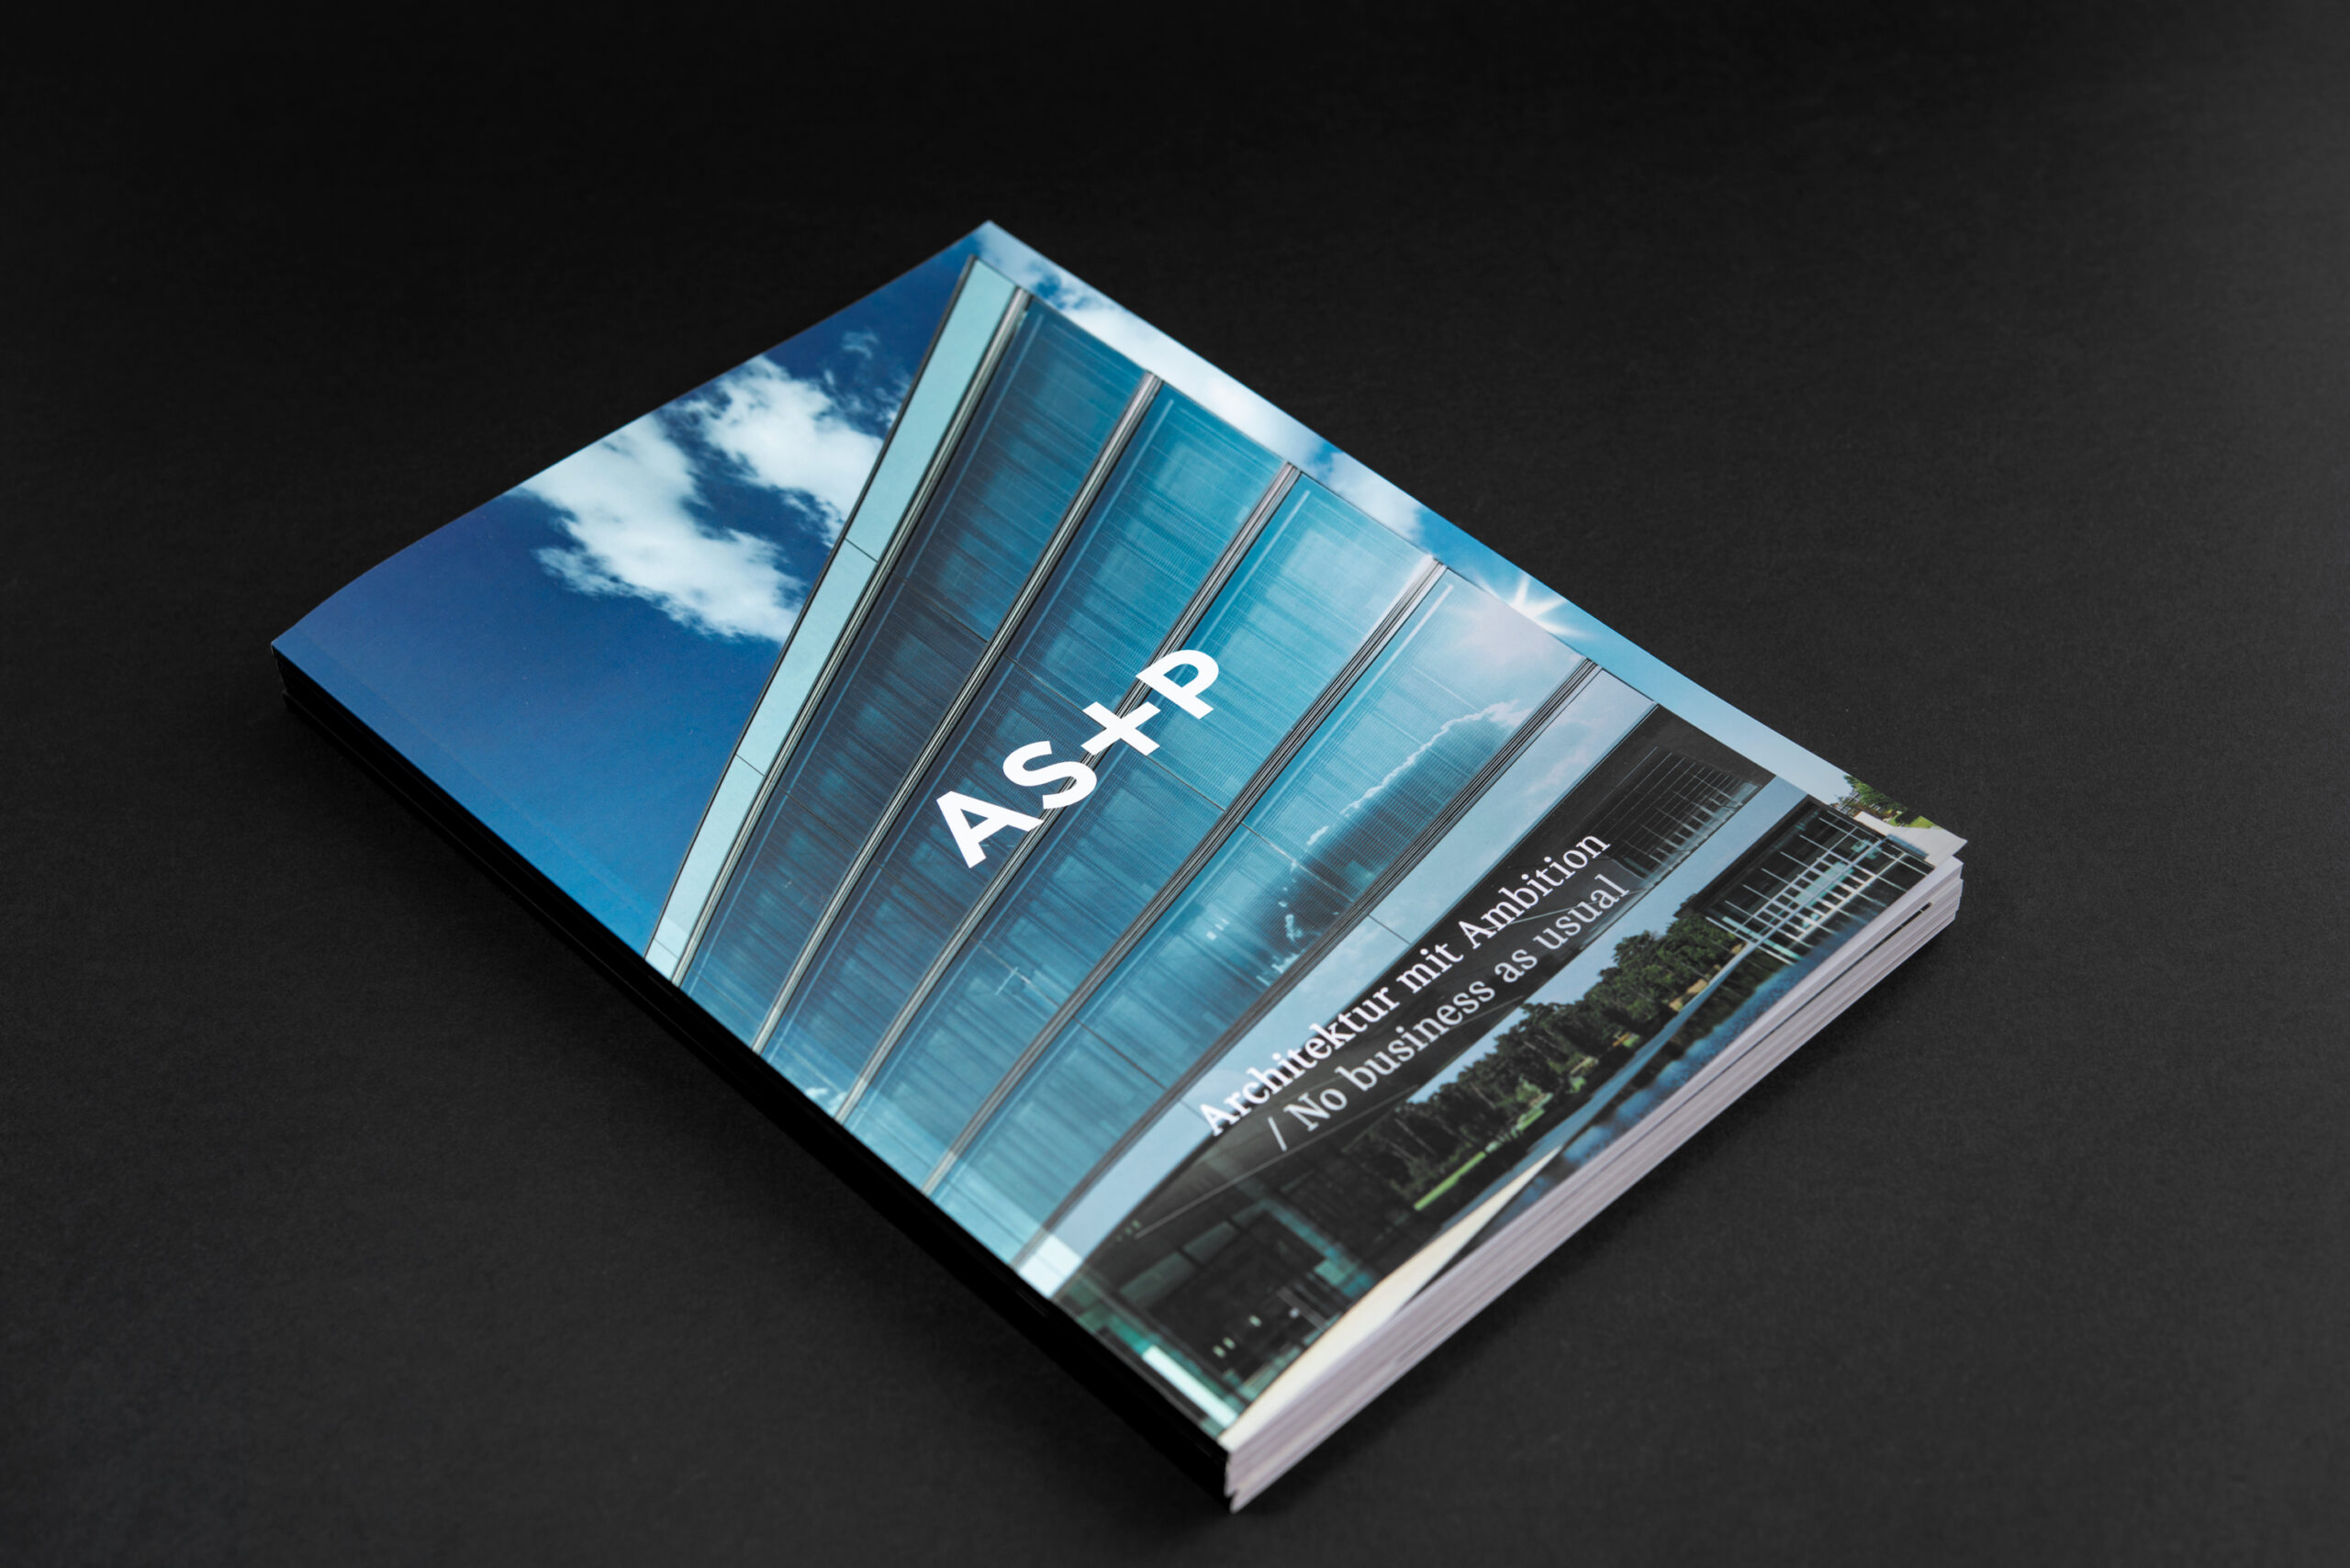 Broschüre (Editorial Design) - Architektur mit Ambition / No business as usual - AS+P Albert Speer + Partner